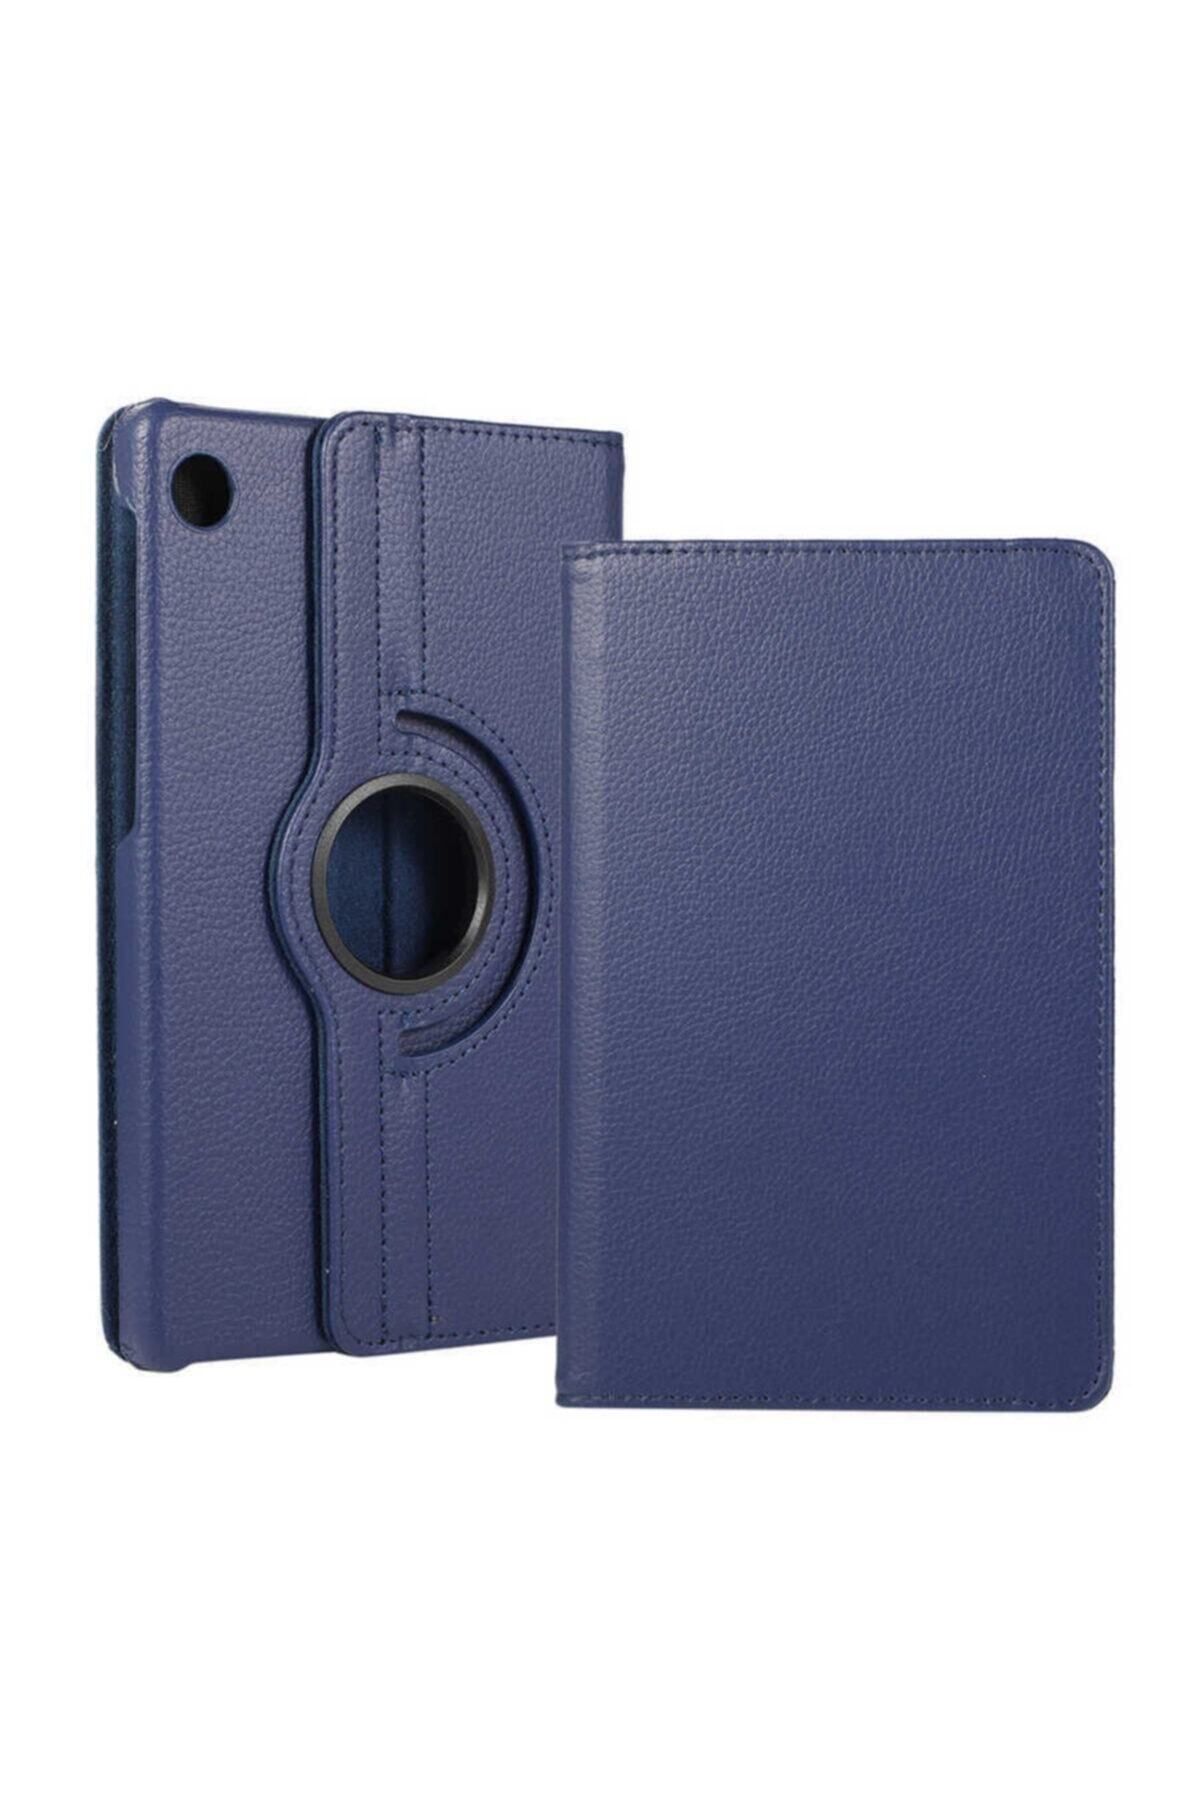 TEKNETSTORE Samsung Galaxy Tab A9 8.7 Inç Tablet Uyumlu Kılıf 360° Dönebilen Deri Leather New Style Case